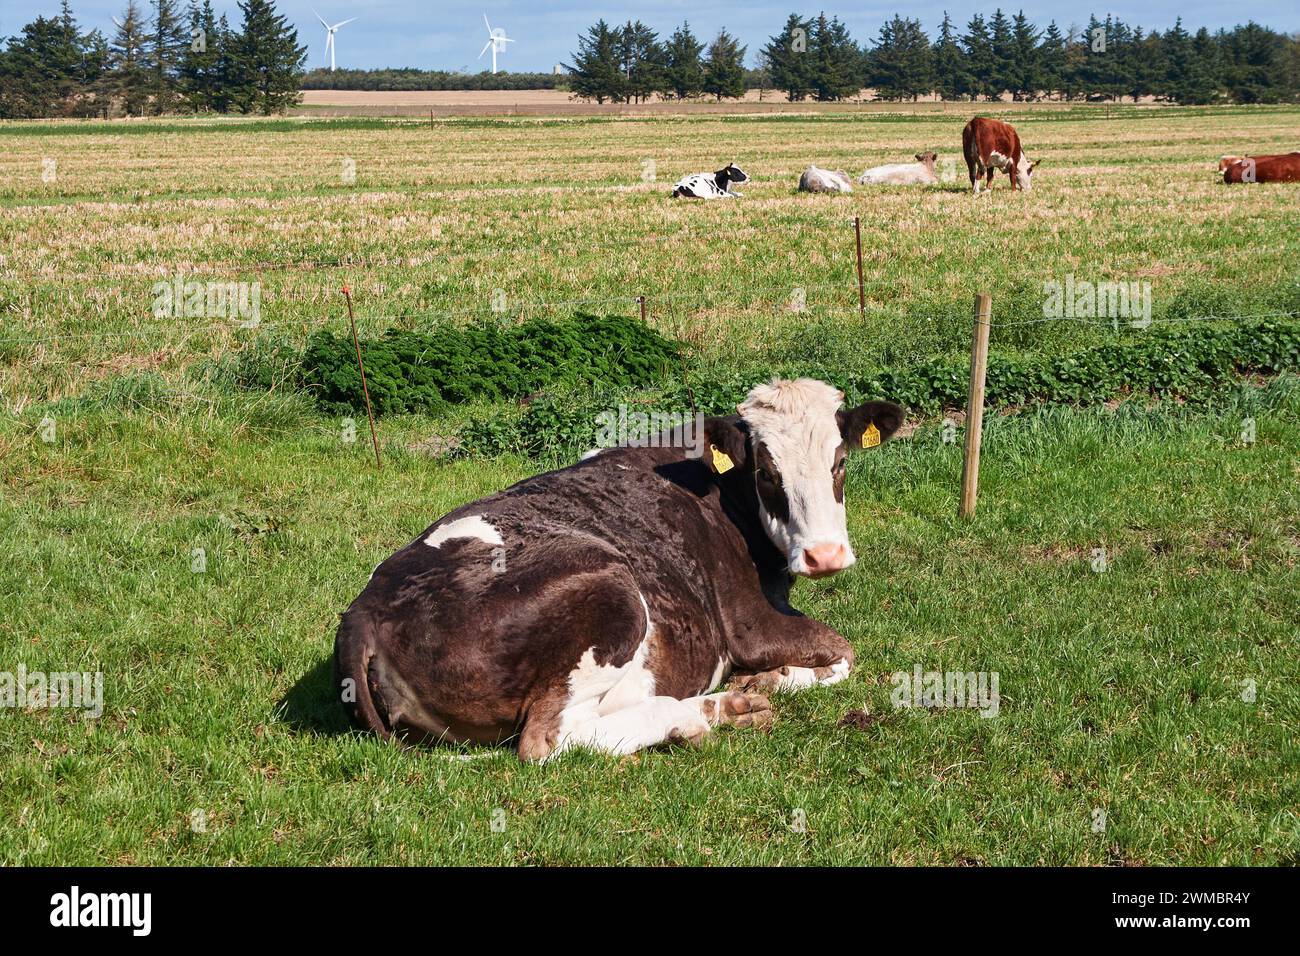 Danish black and white cow (Danish Jutland cattle); Denmark Stock Photo